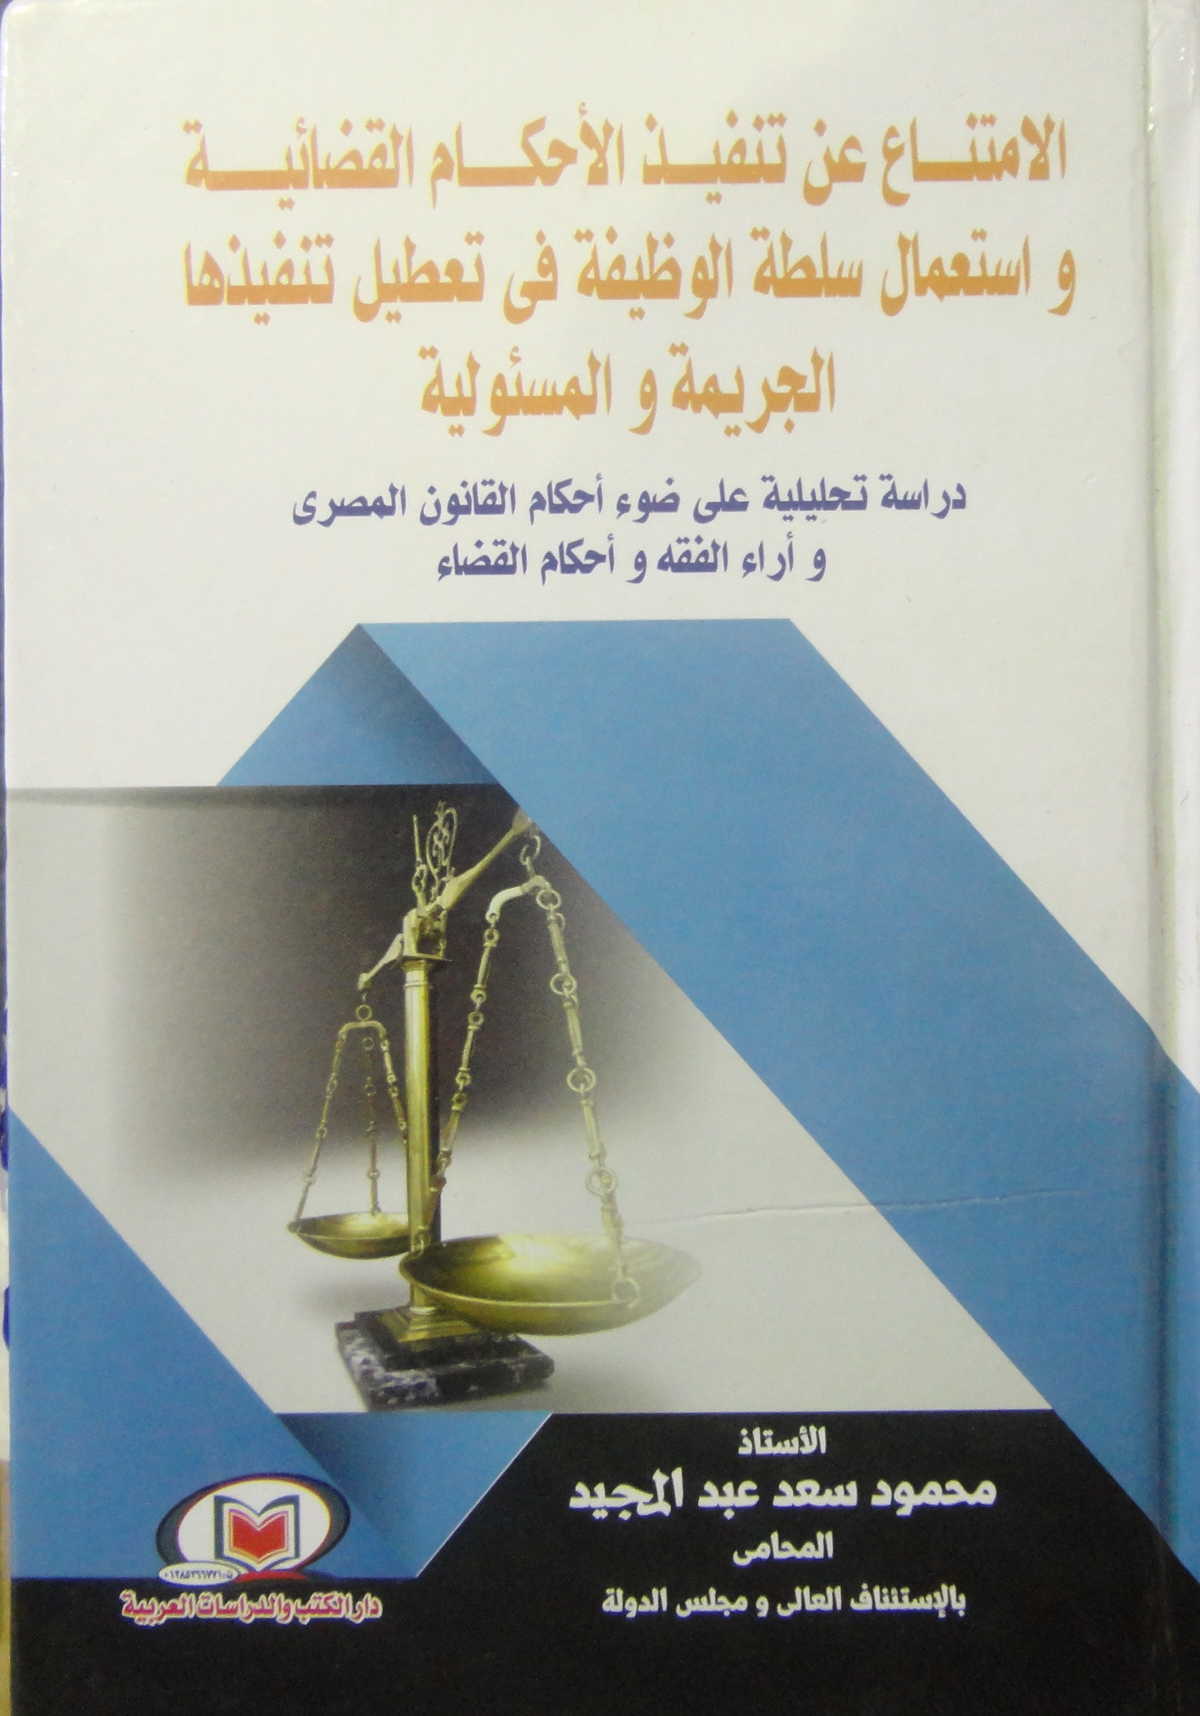 الإمتناع عن تنفيذ الأحكام القضائية واستعمال سلطة الوظيفة في تعطيل تنفيذها (الجريمة والمسئولية) "دراسة تحليلية على ضوء أحكام القانون المصري وآراء الفقه وأحكام القضاء"